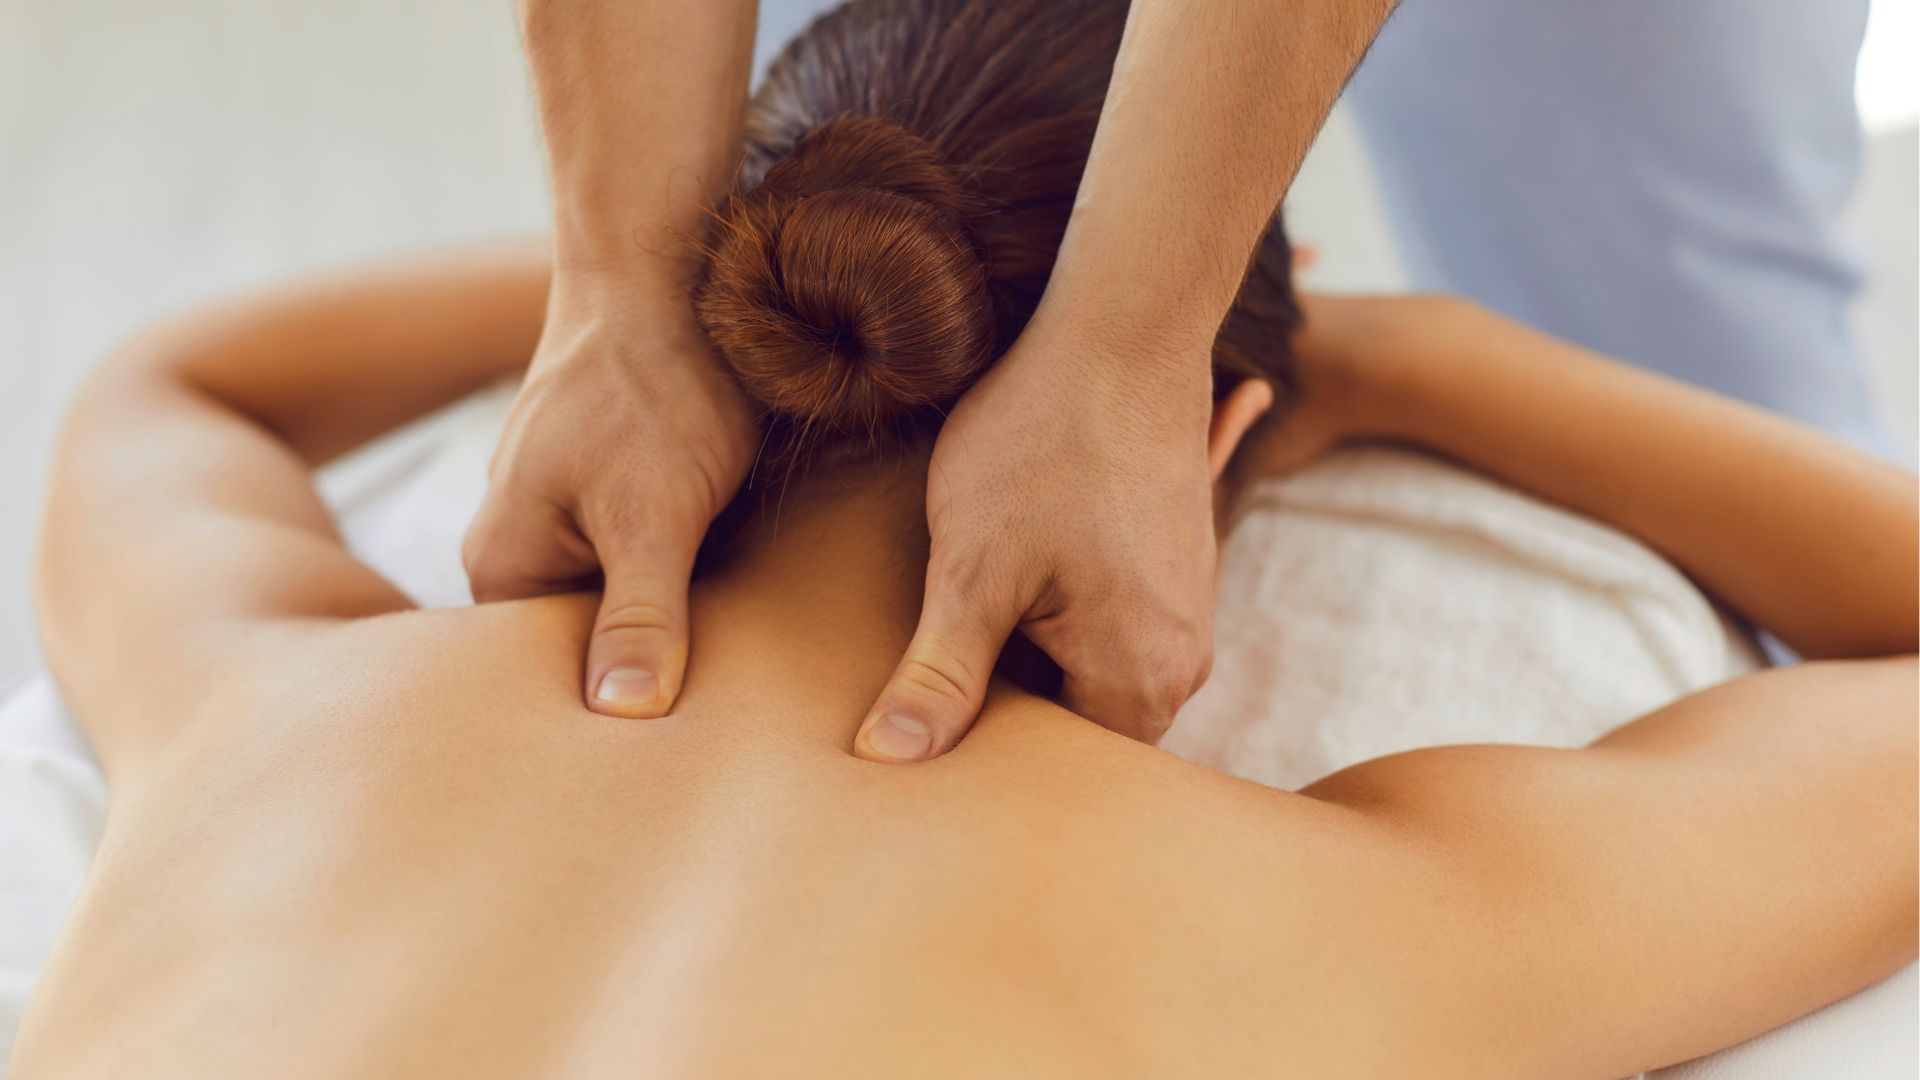 Relaxation Massage | La Clinique Naturelle | Online booking request